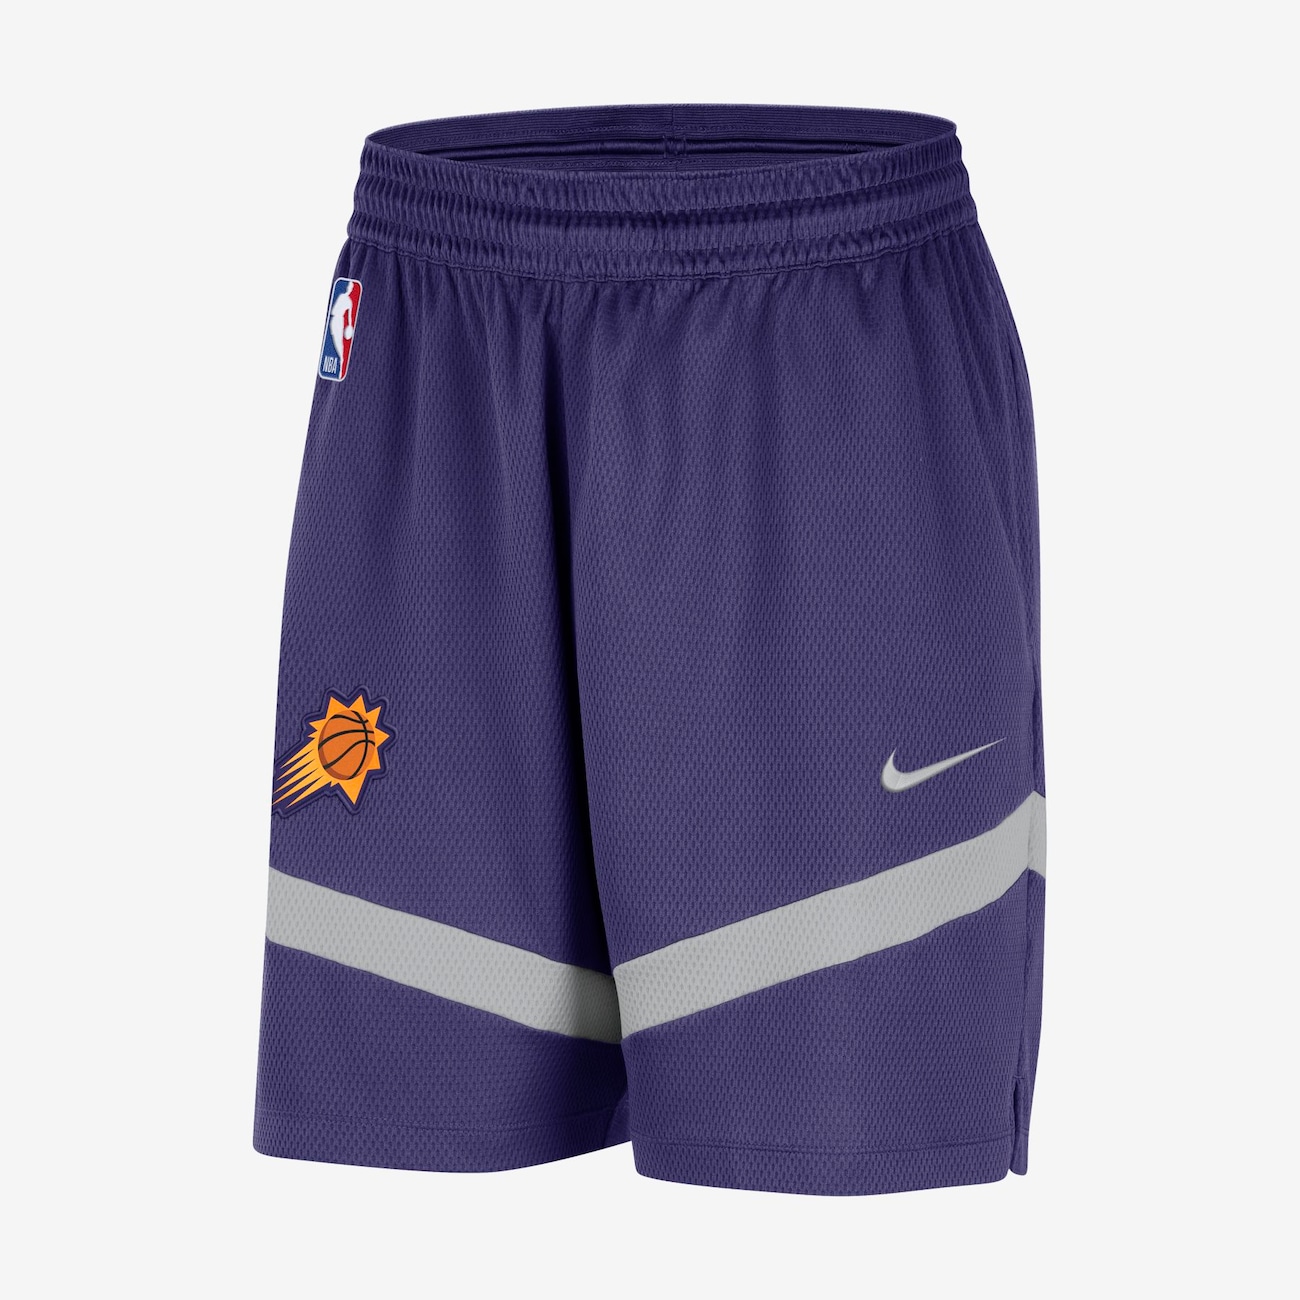 Shorts Nike Phoenix Suns Masculino